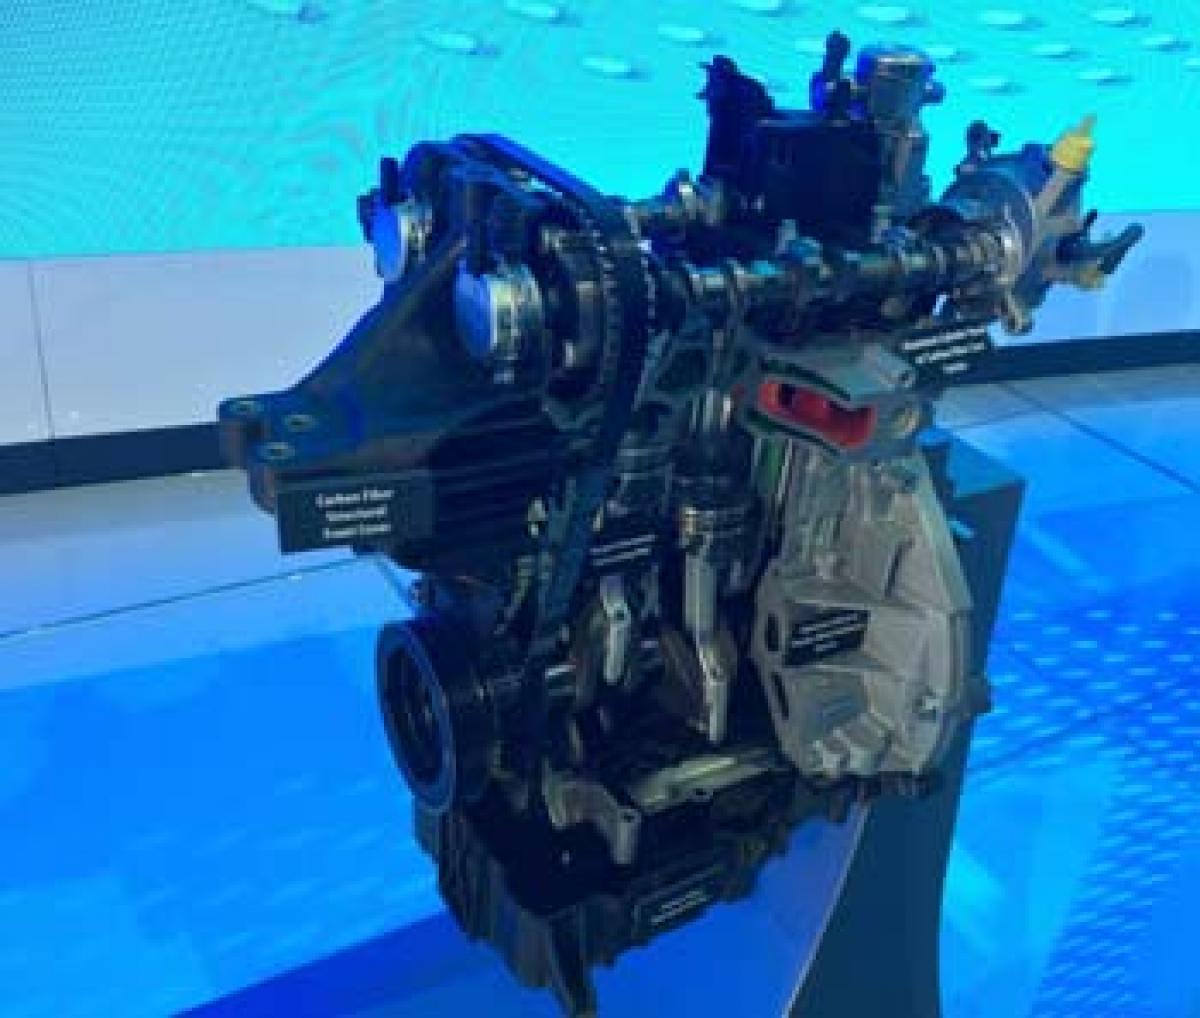 Ford unveils lightweight EcoBoost engine